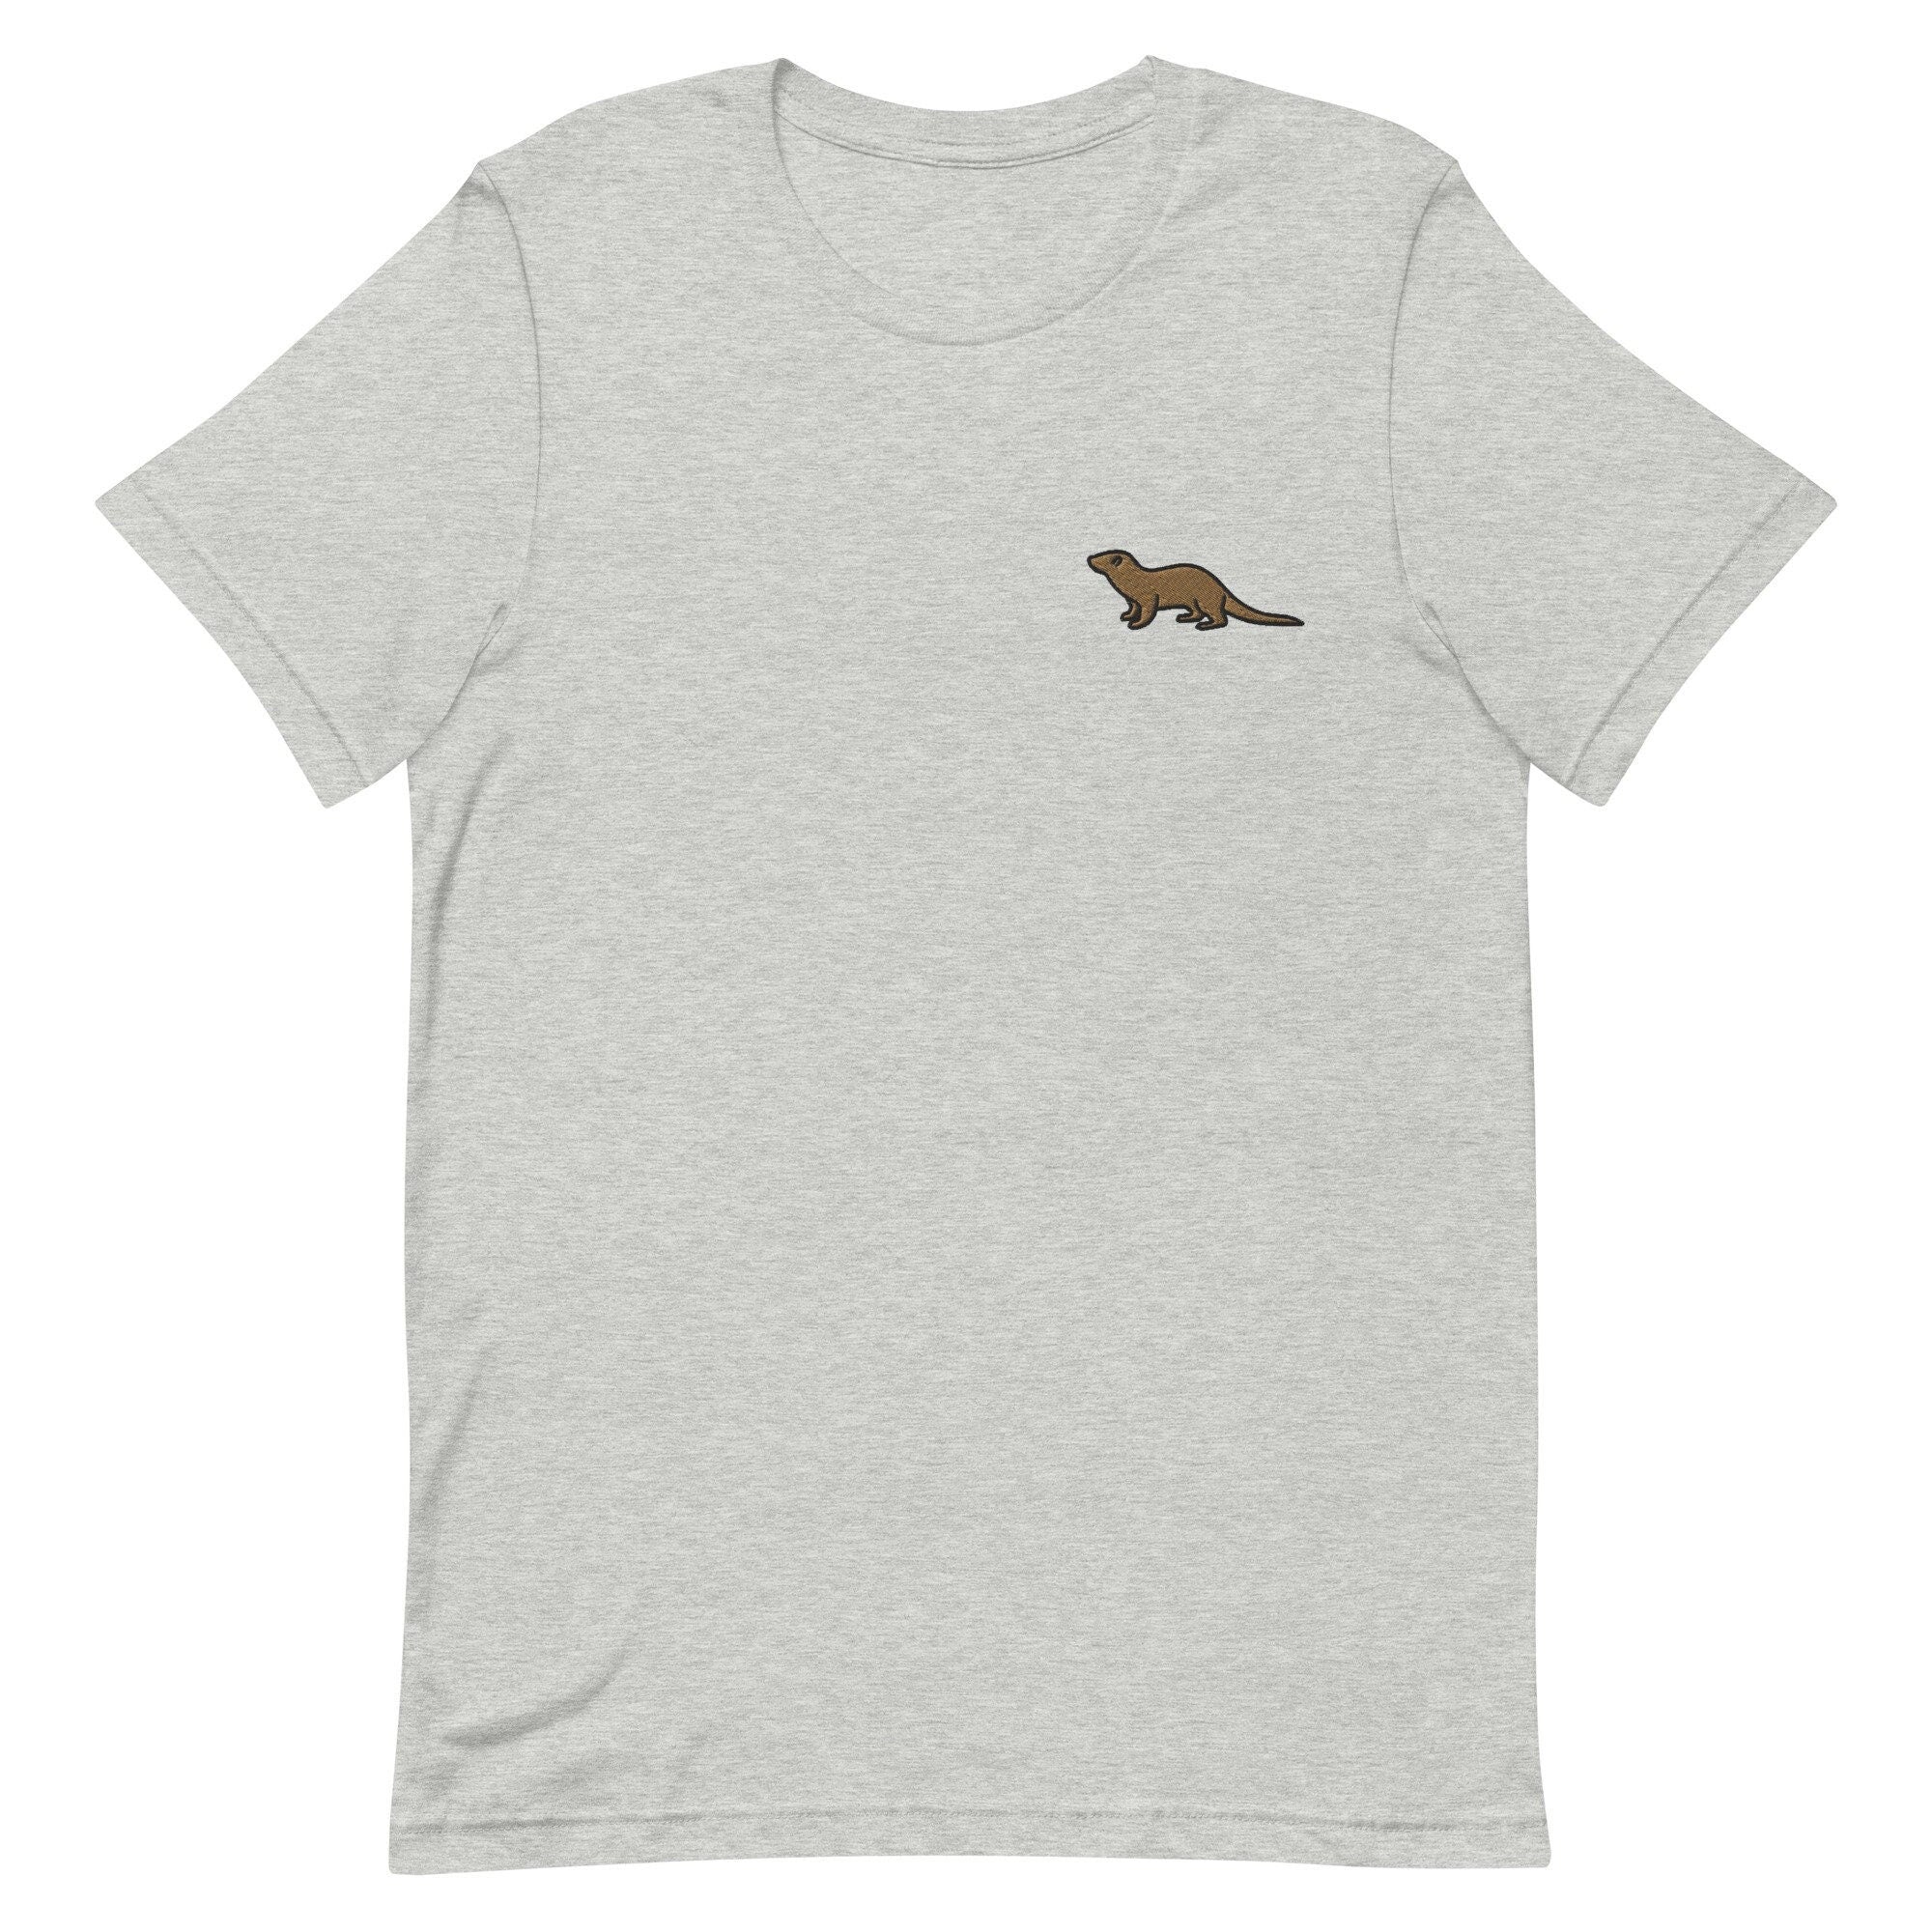 Otter Premium Men's T-Shirt, Embroidered Men's T-Shirt Gift for Boyfriend, Men's Short Sleeve Shirt - Multiple Colors